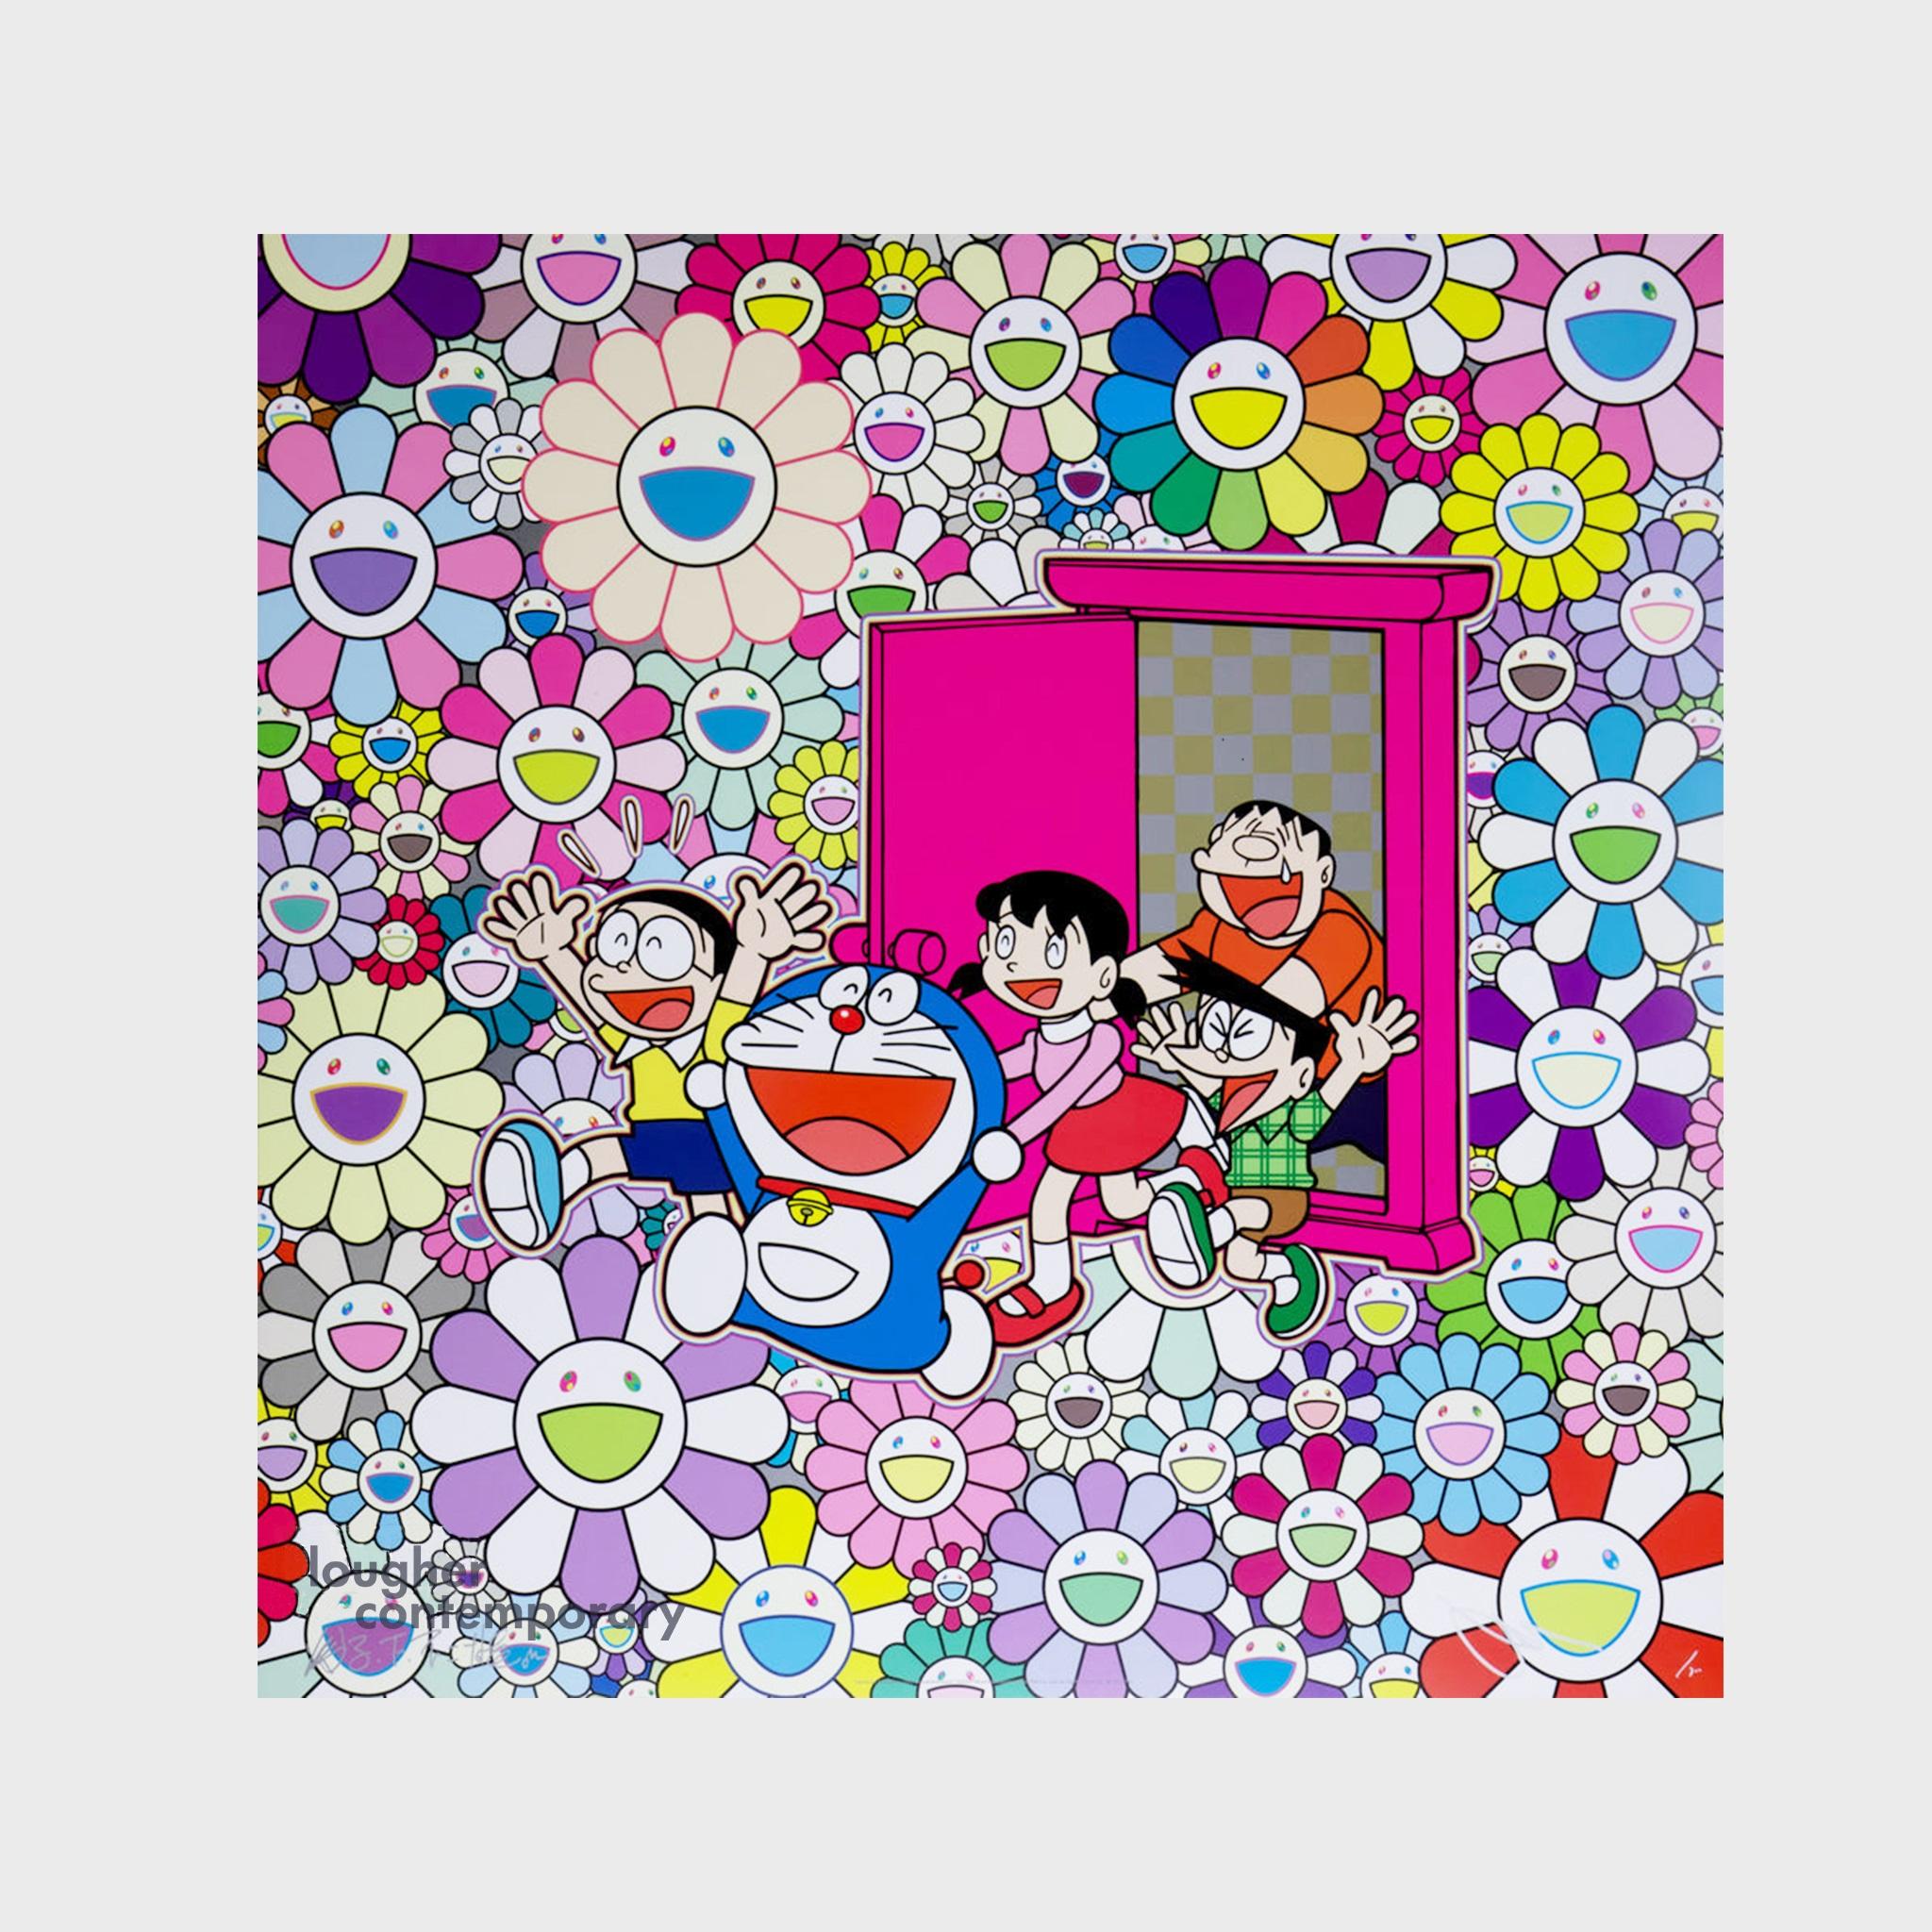 Saved by Dokodemo-Tür (Tür wo immer) – Print von Takashi Murakami